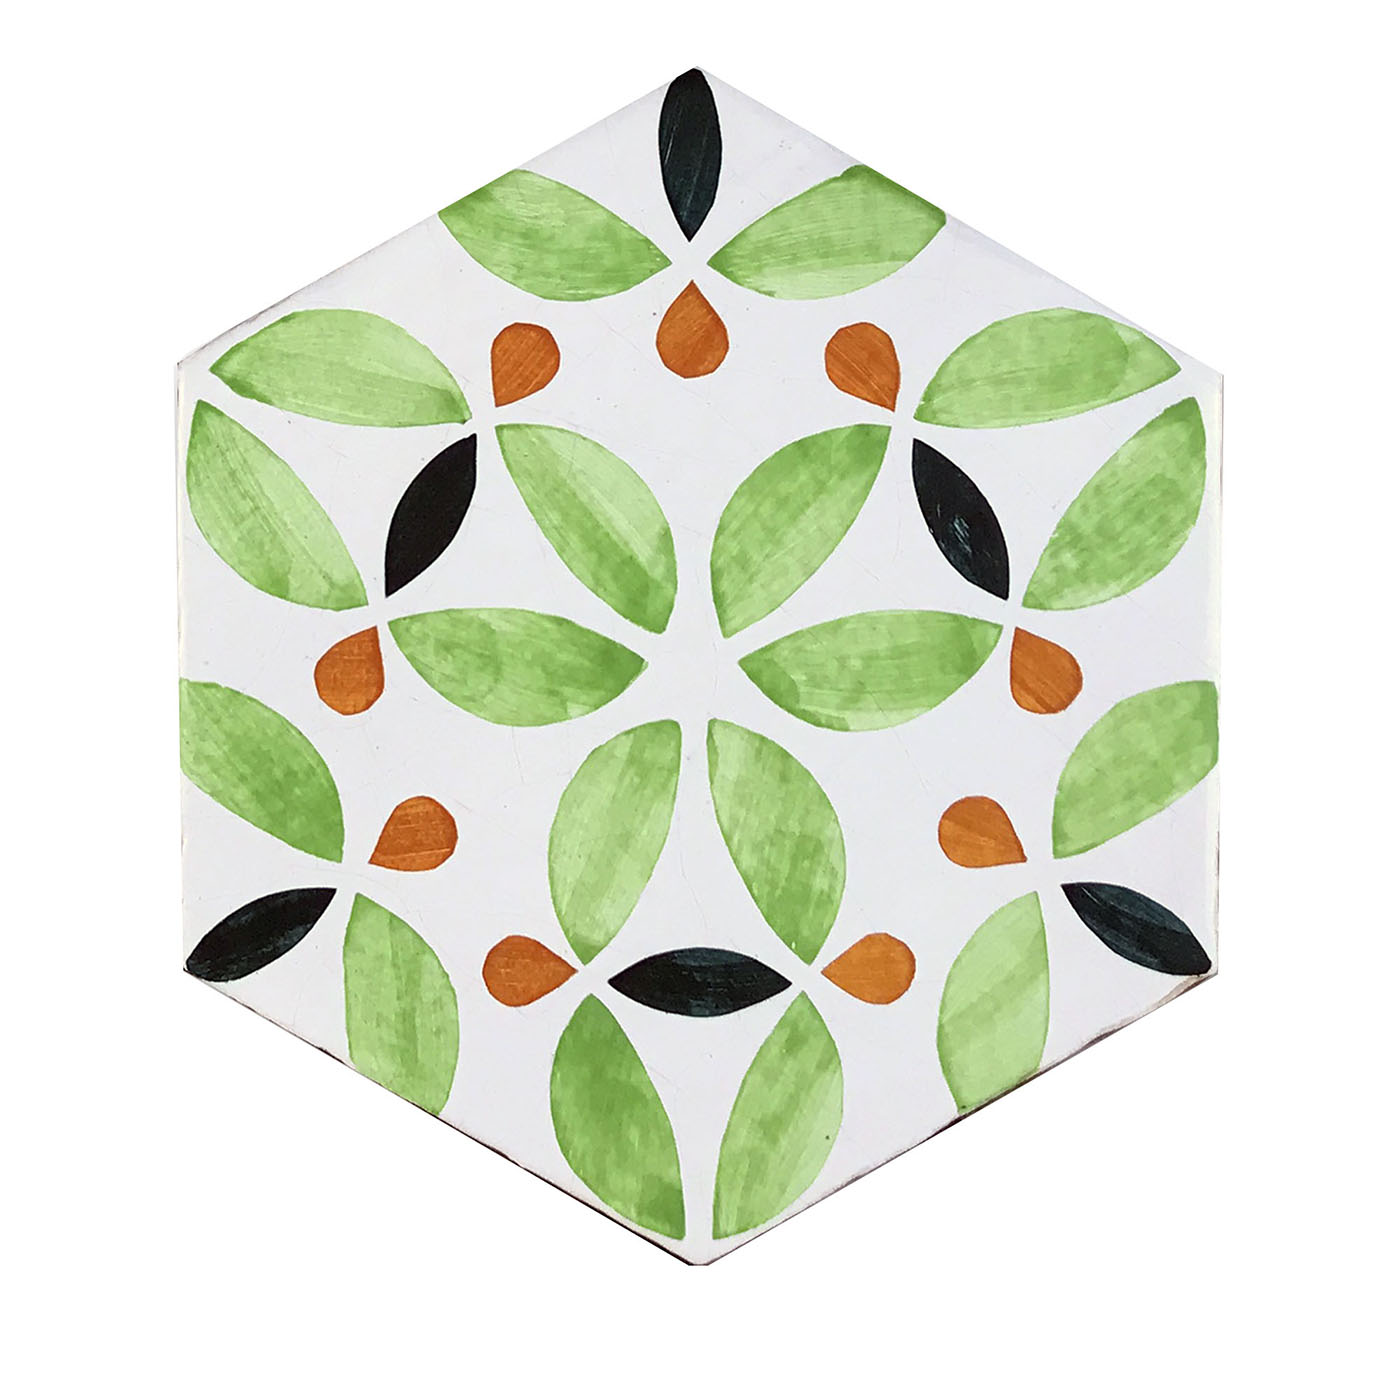 Daamè Set of 28 Hexagonal Light Green Tiles - Main view